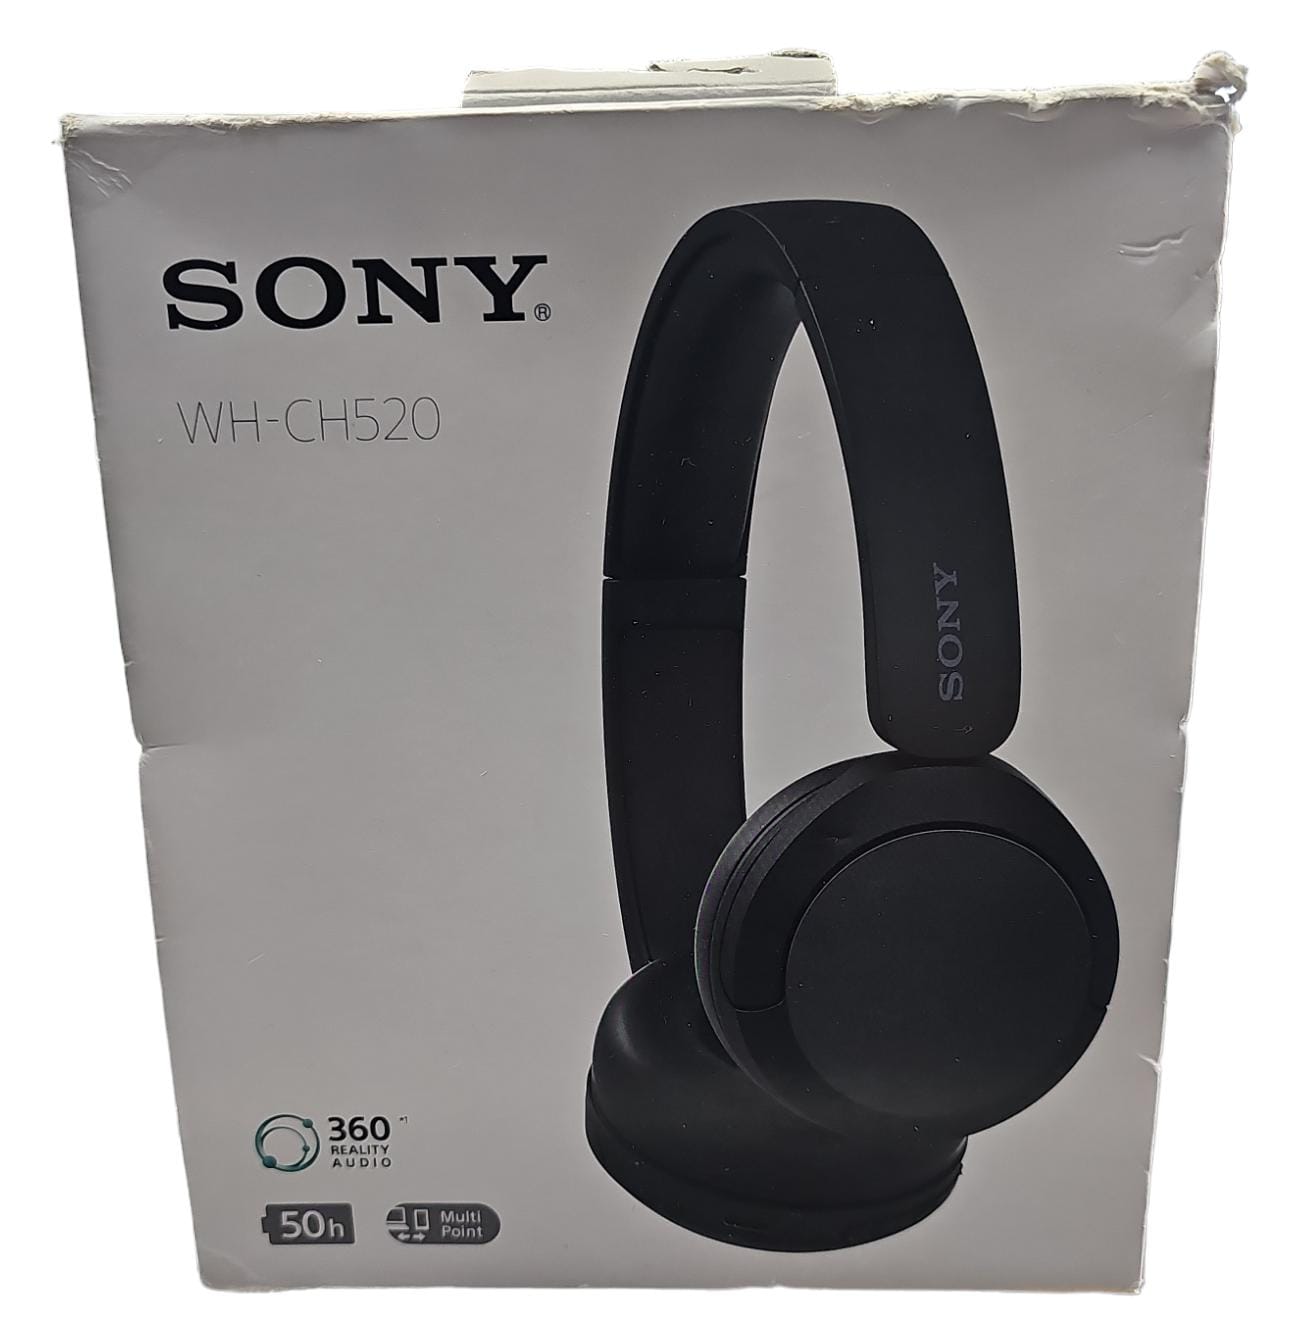 Sony WH-CH520 wireless earphones